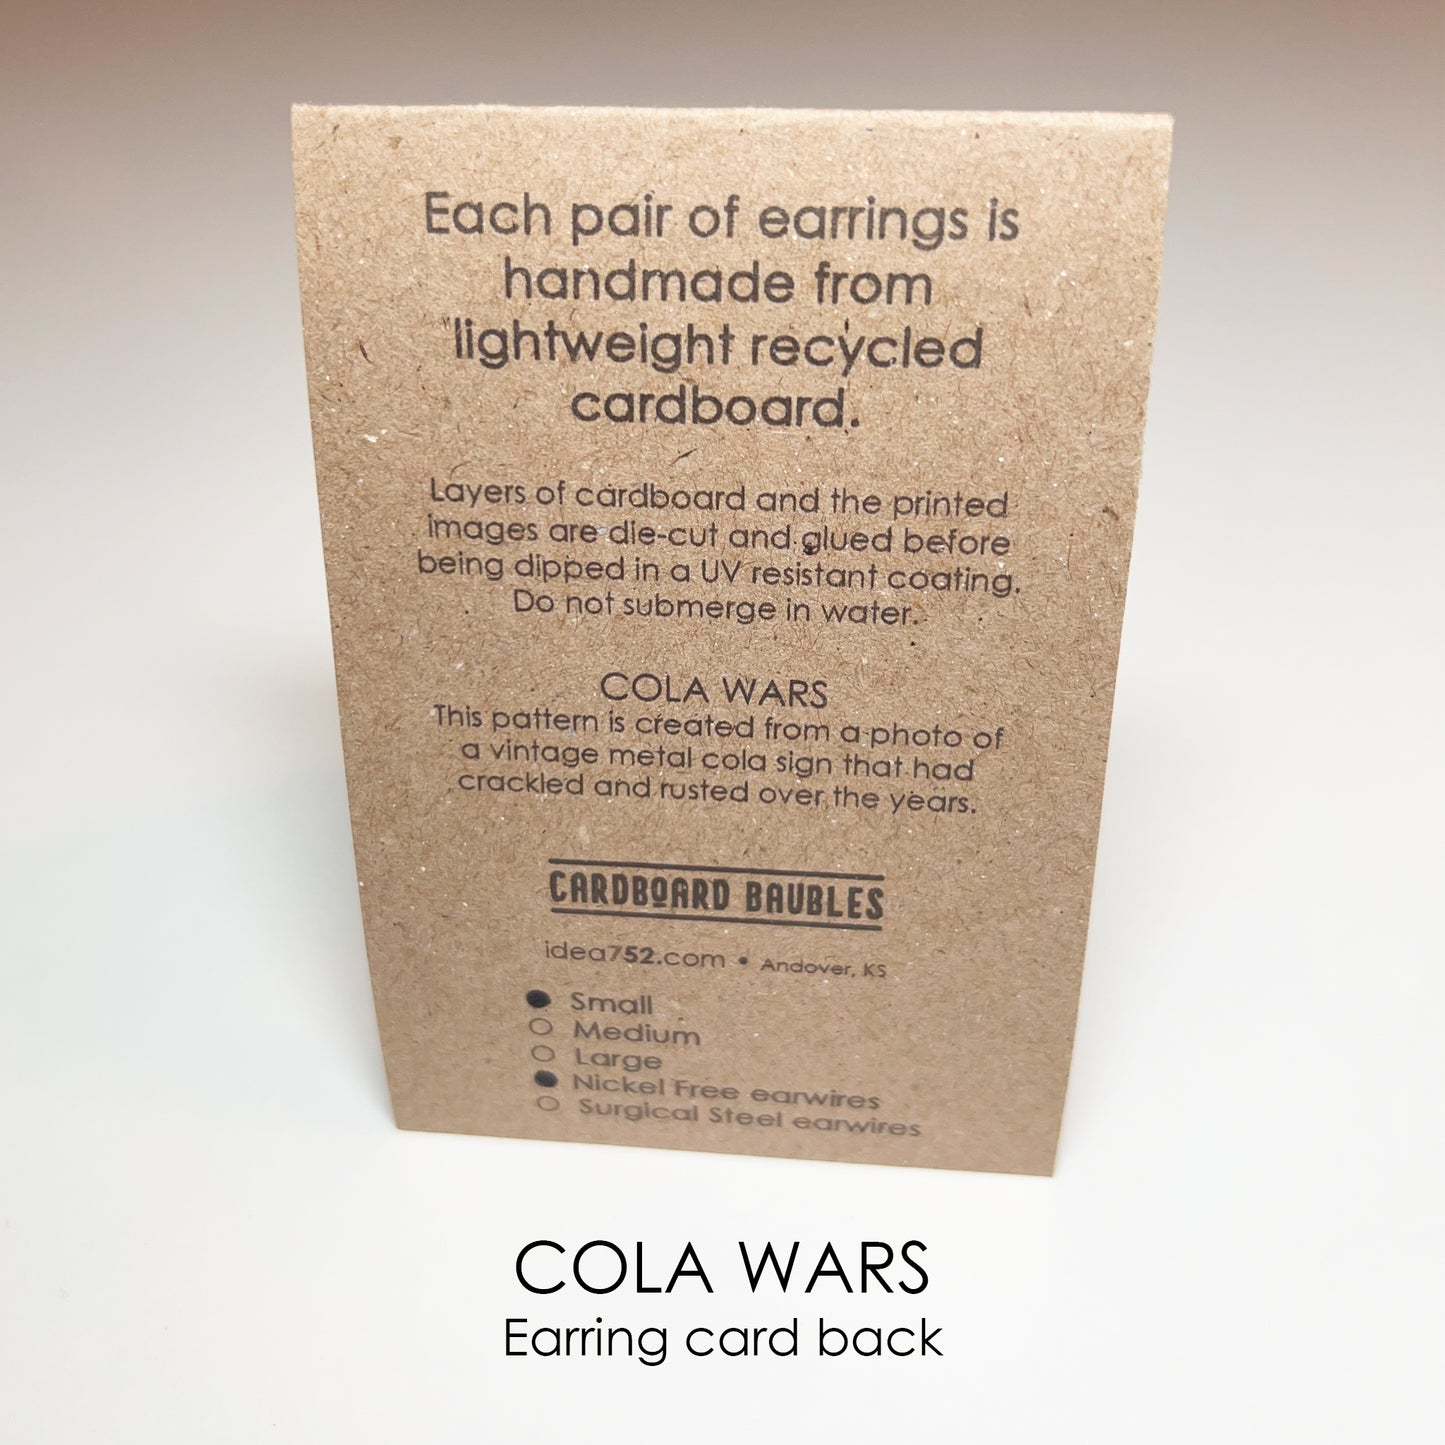 COLA WARS - Tab Cardboard Baubles Earrings